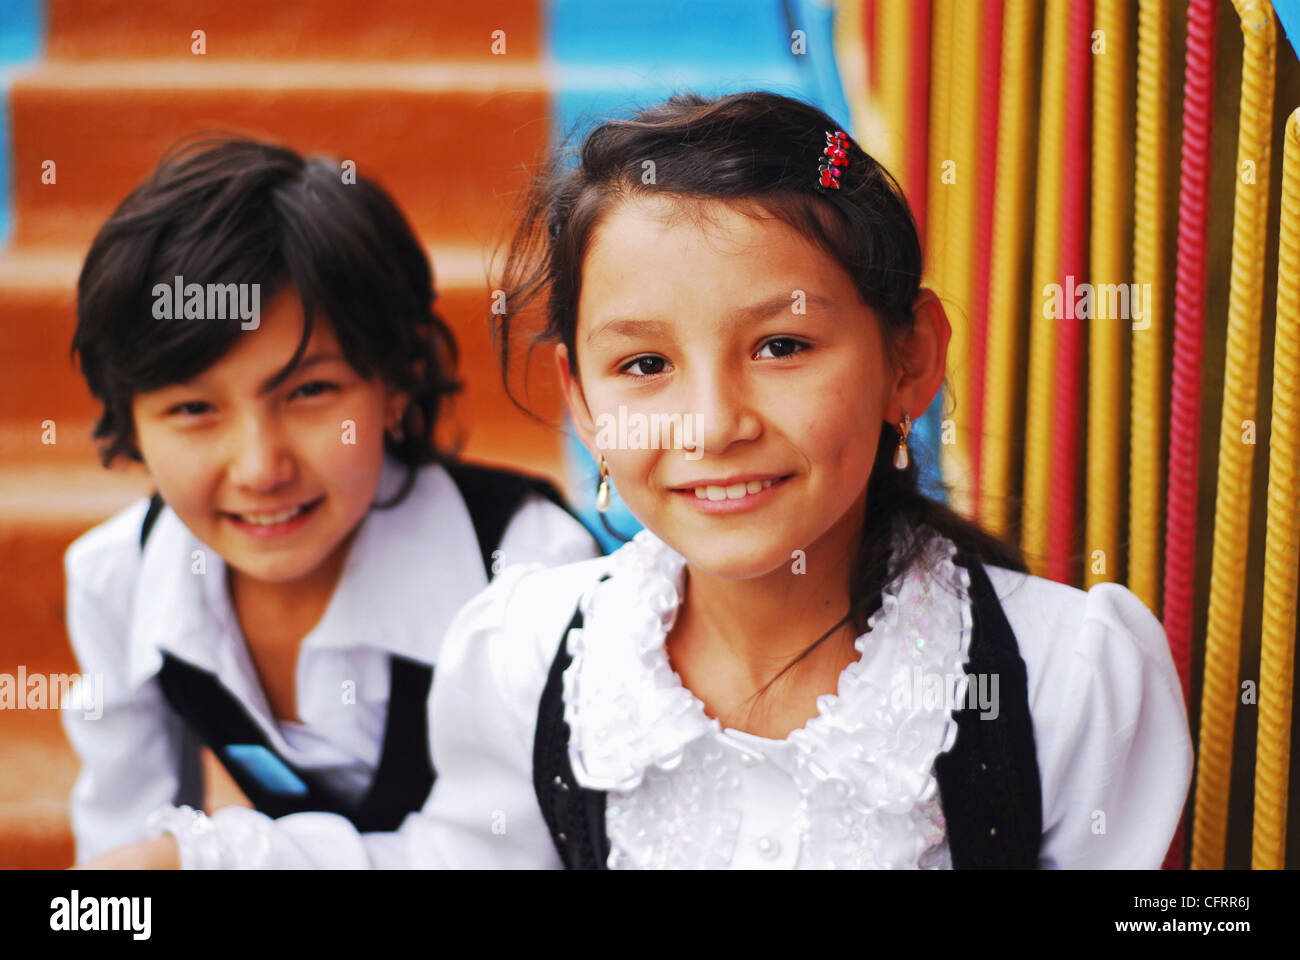 Usbekistan, Fergana, close-up Portrait des Lächelns Schulmädchen auf der Treppe Stockfoto